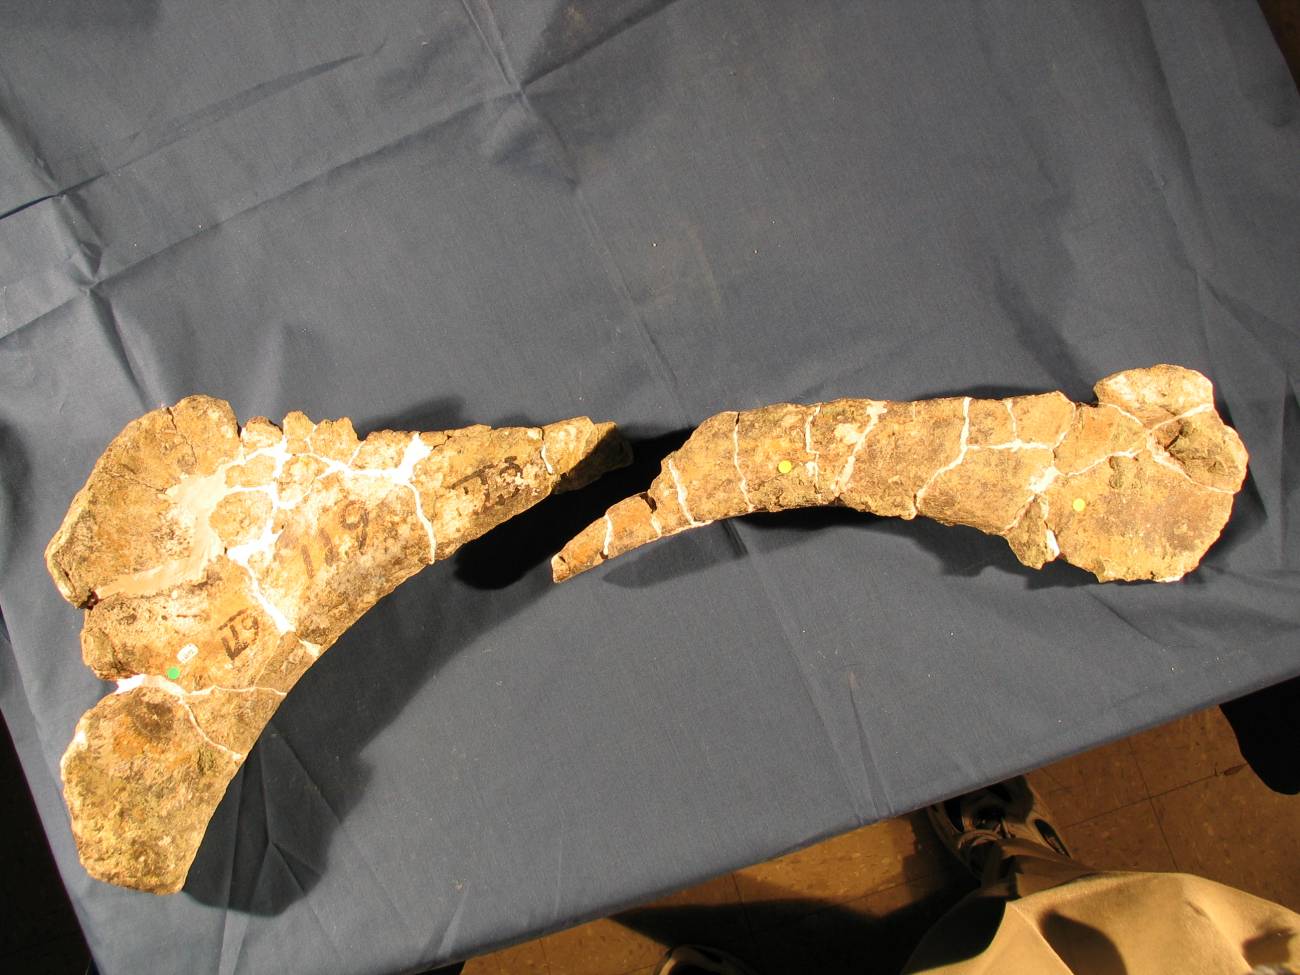 Reconstruyen la enigmática ruptura de miles de huesos de dinosaurios